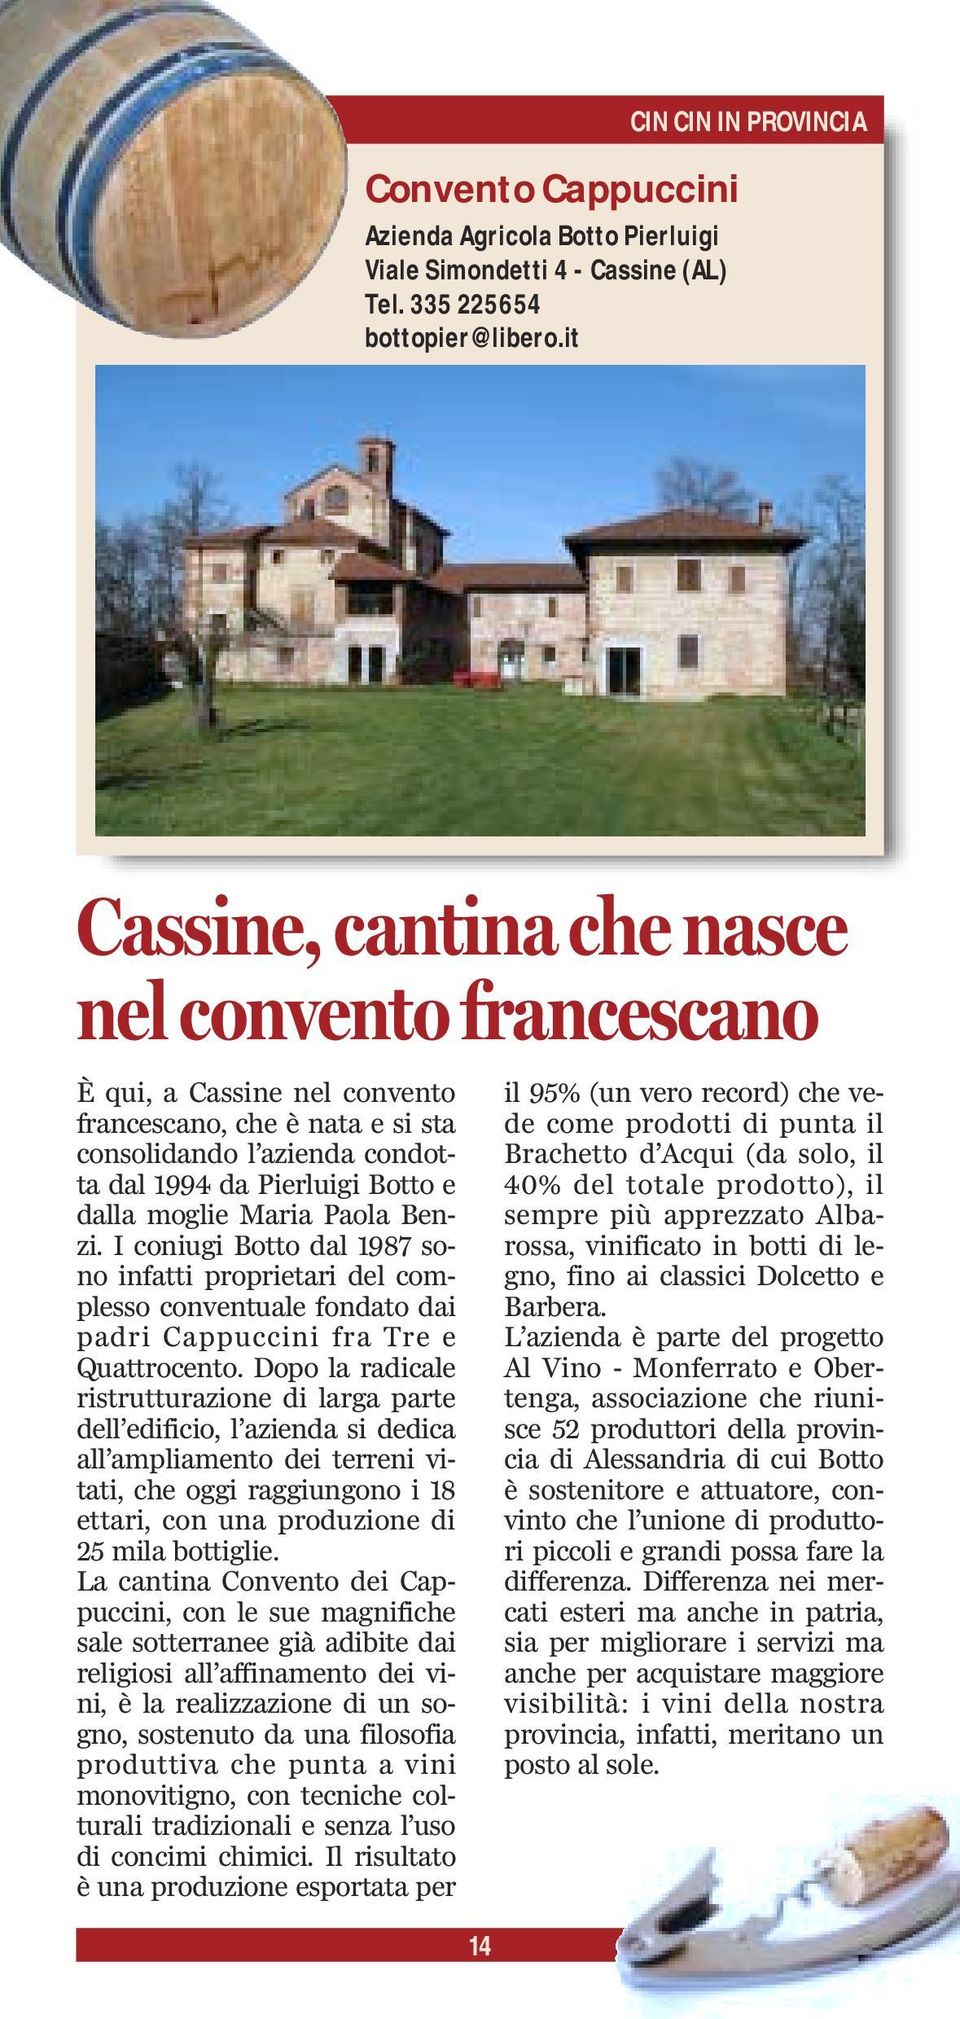 e dalla moglie Maria Paola Benzi. I coniugi Botto dal 1987 sono infatti proprietari del complesso conventuale fondato dai padri Cappuccini fra Tre e Quattrocento.